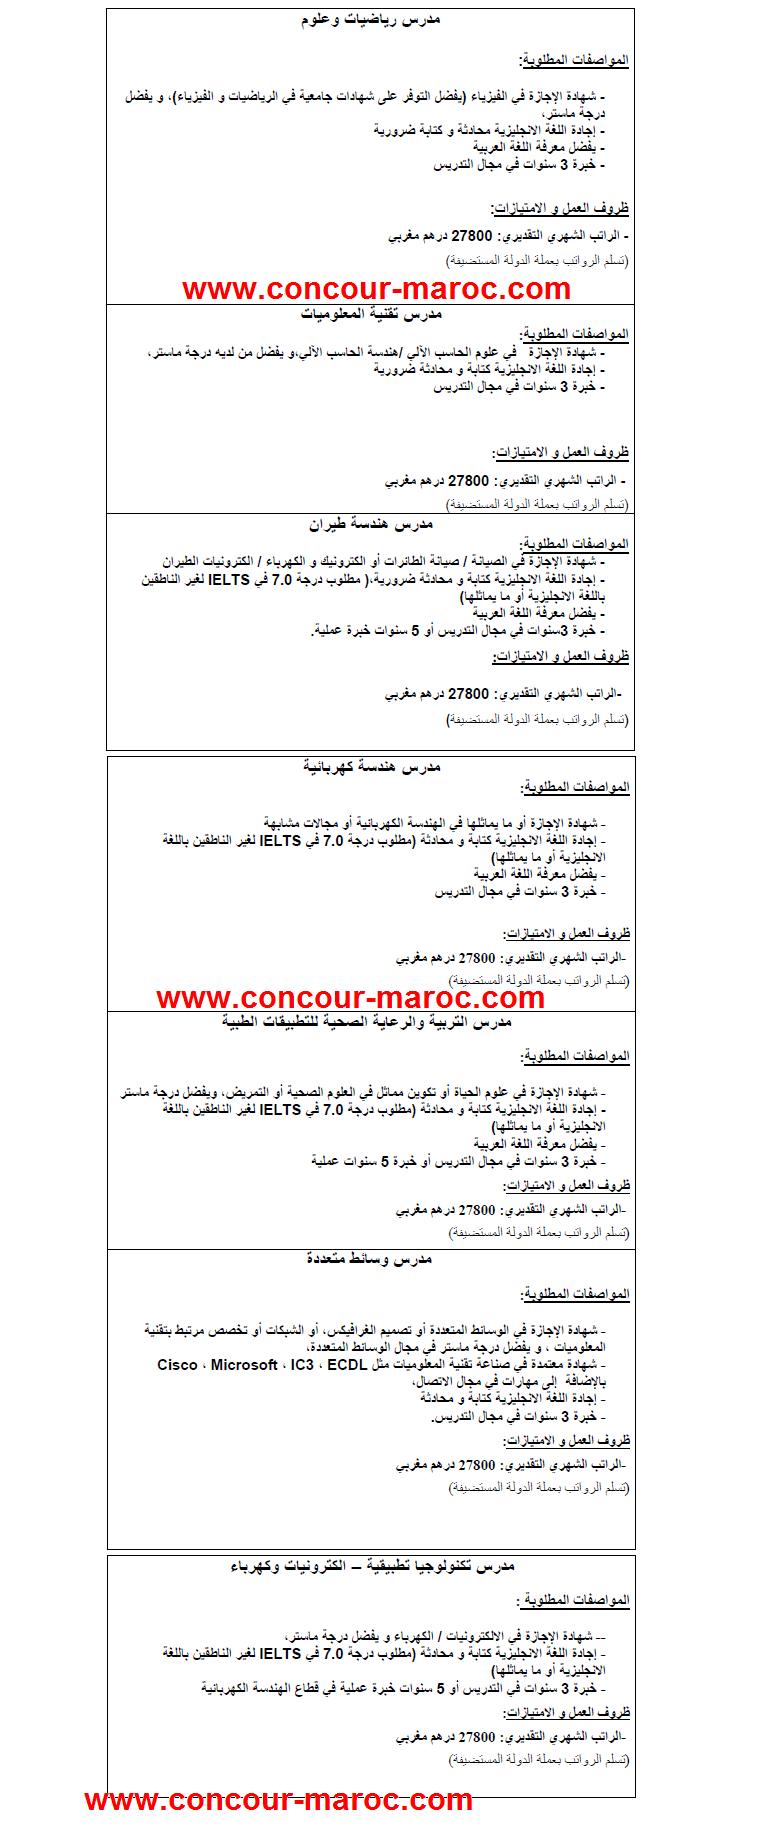 ANAPEC : مؤسسة في مجال التعليم و التدريب المهني بإحدى دول مجلس التعاون الخليجي تشغل مكونين في عدة التخصصات من المغرب اخر اجل لتقديم الترشيحات يوم 03 أبريل 2013 Conco132